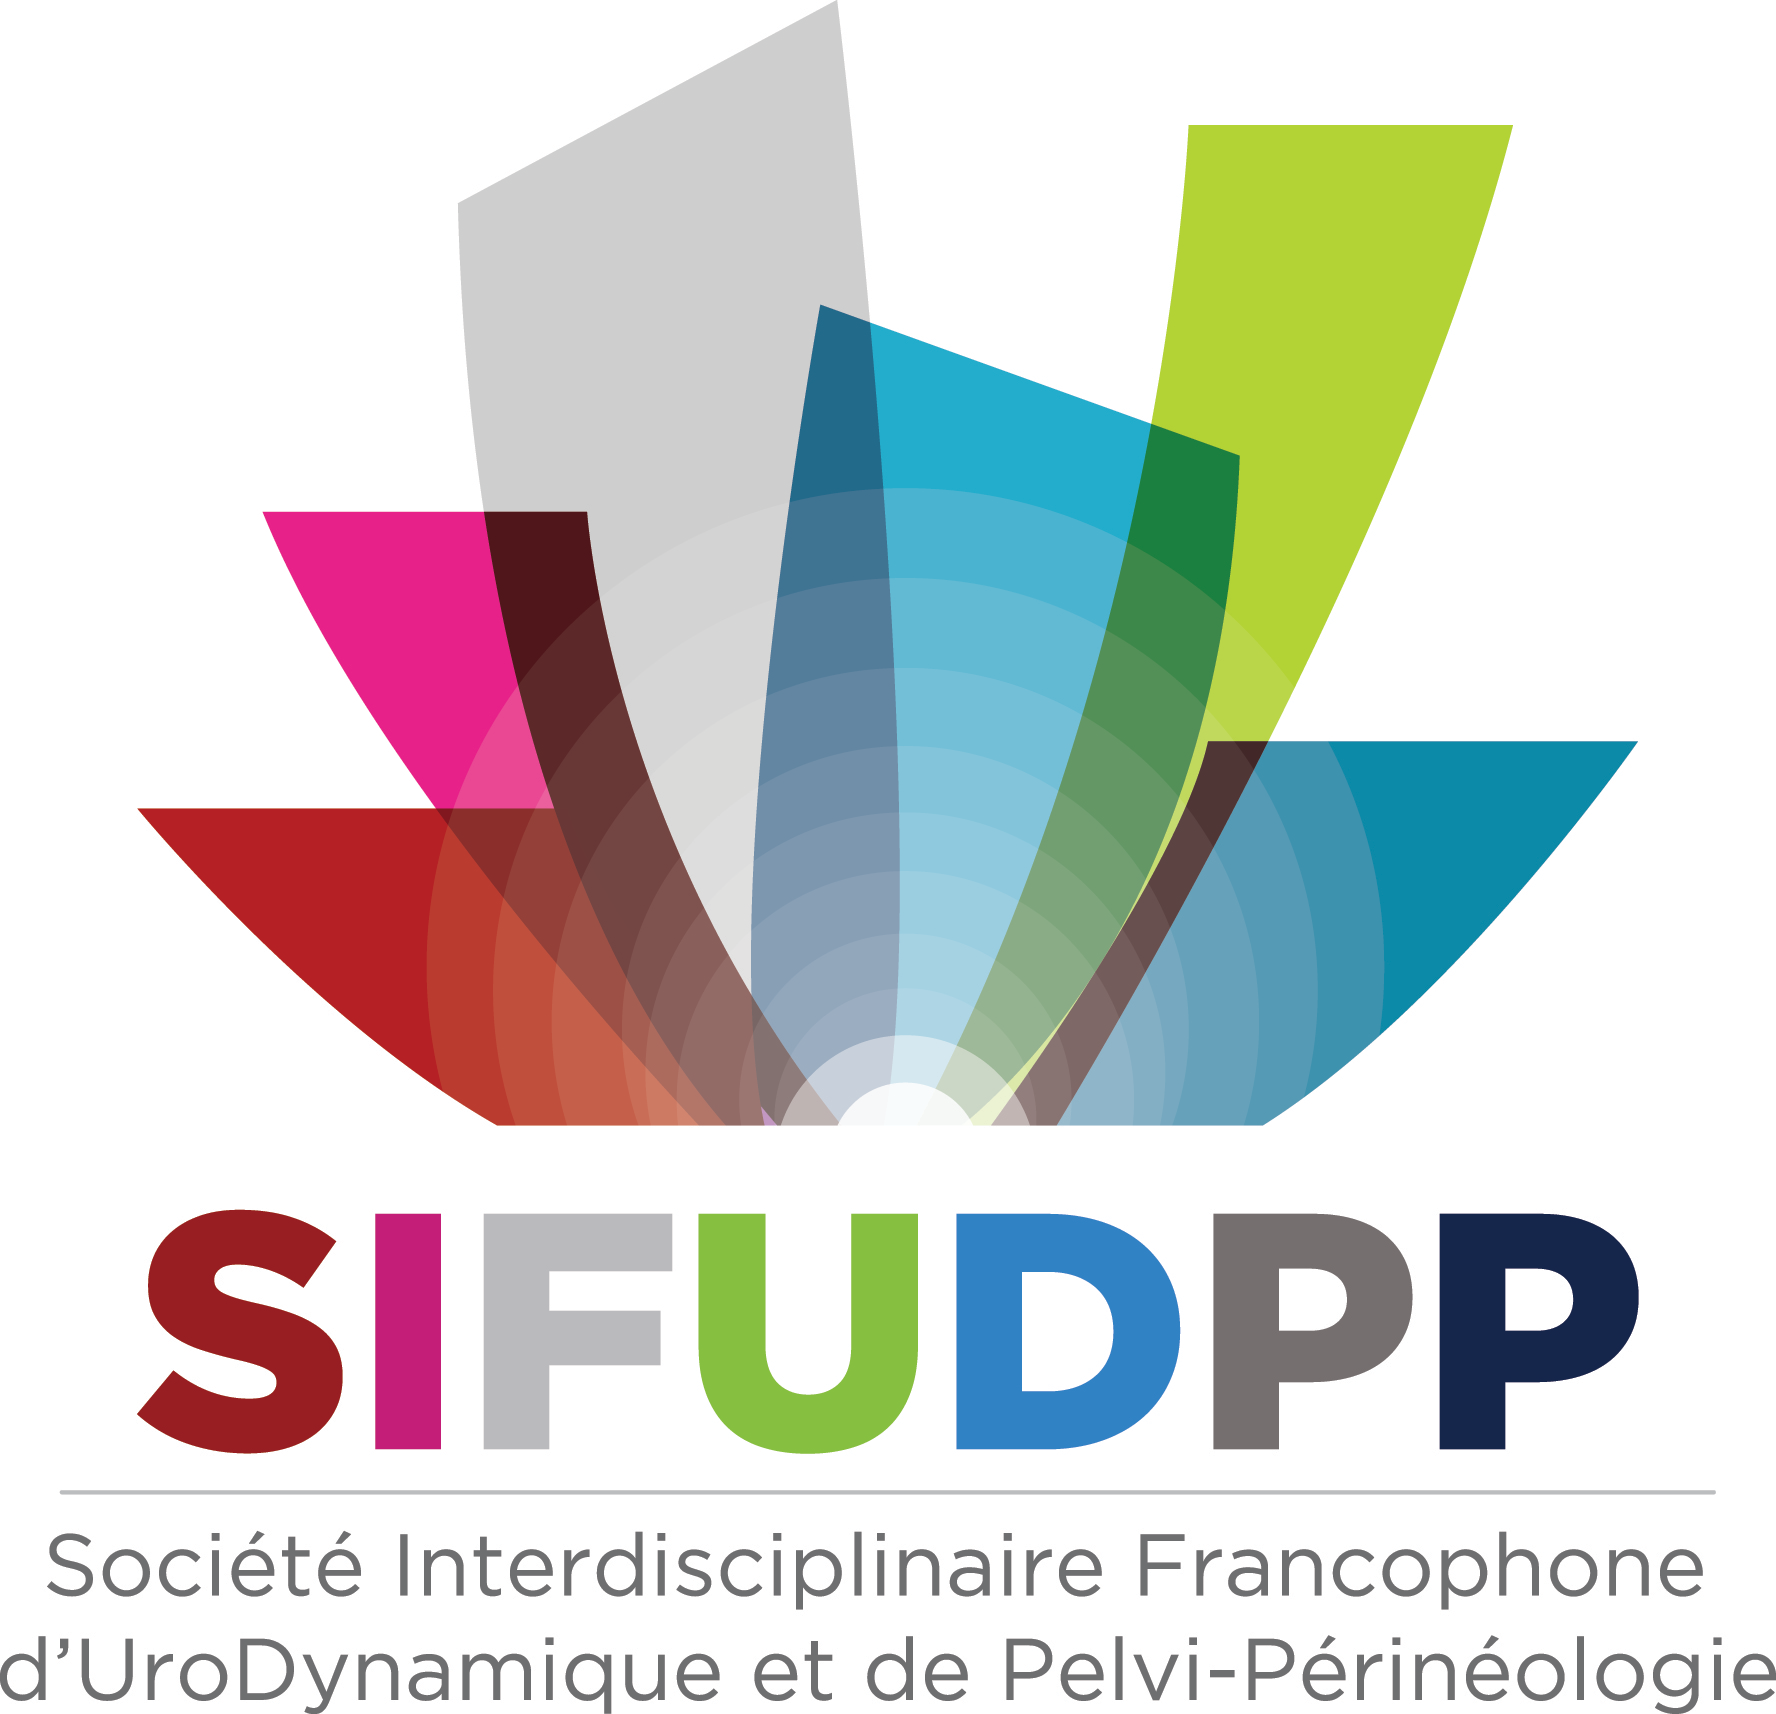 SIFUD-PP Paris 2016 : Peut-on rééduquer un patient irradié pelvien ?